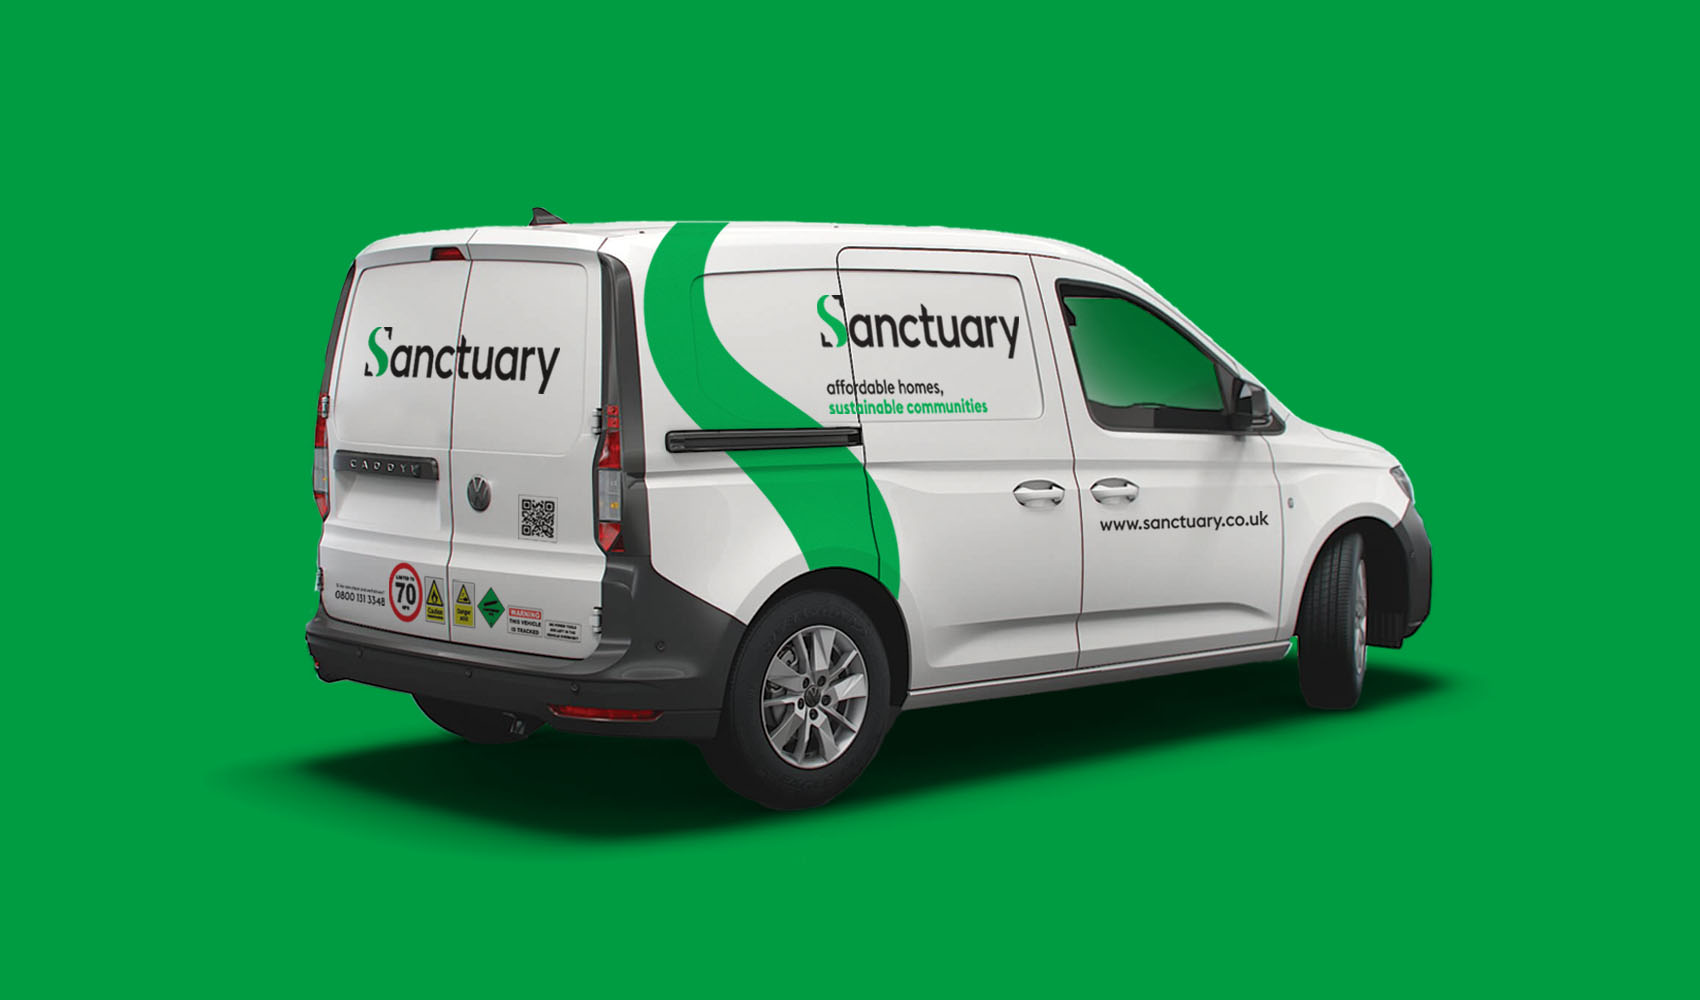 Sanctuary concept van livery.